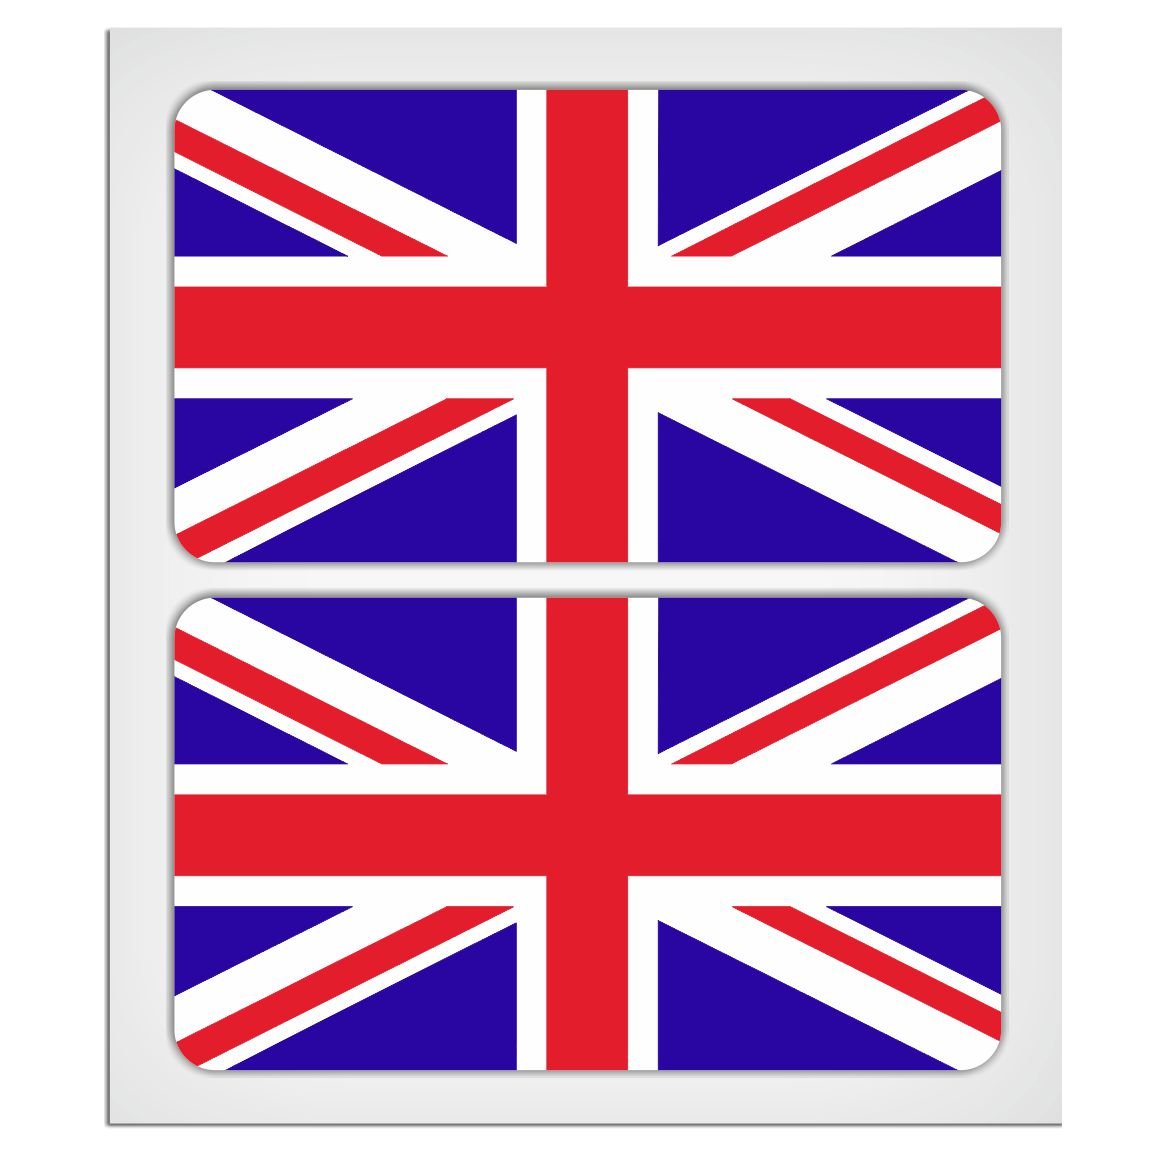 MioVespa-Kollektion, 2 x 70 mm, Union Jack-Flaggen, laminiert, Aufkleber von EU-Decals - MioVespa Collection